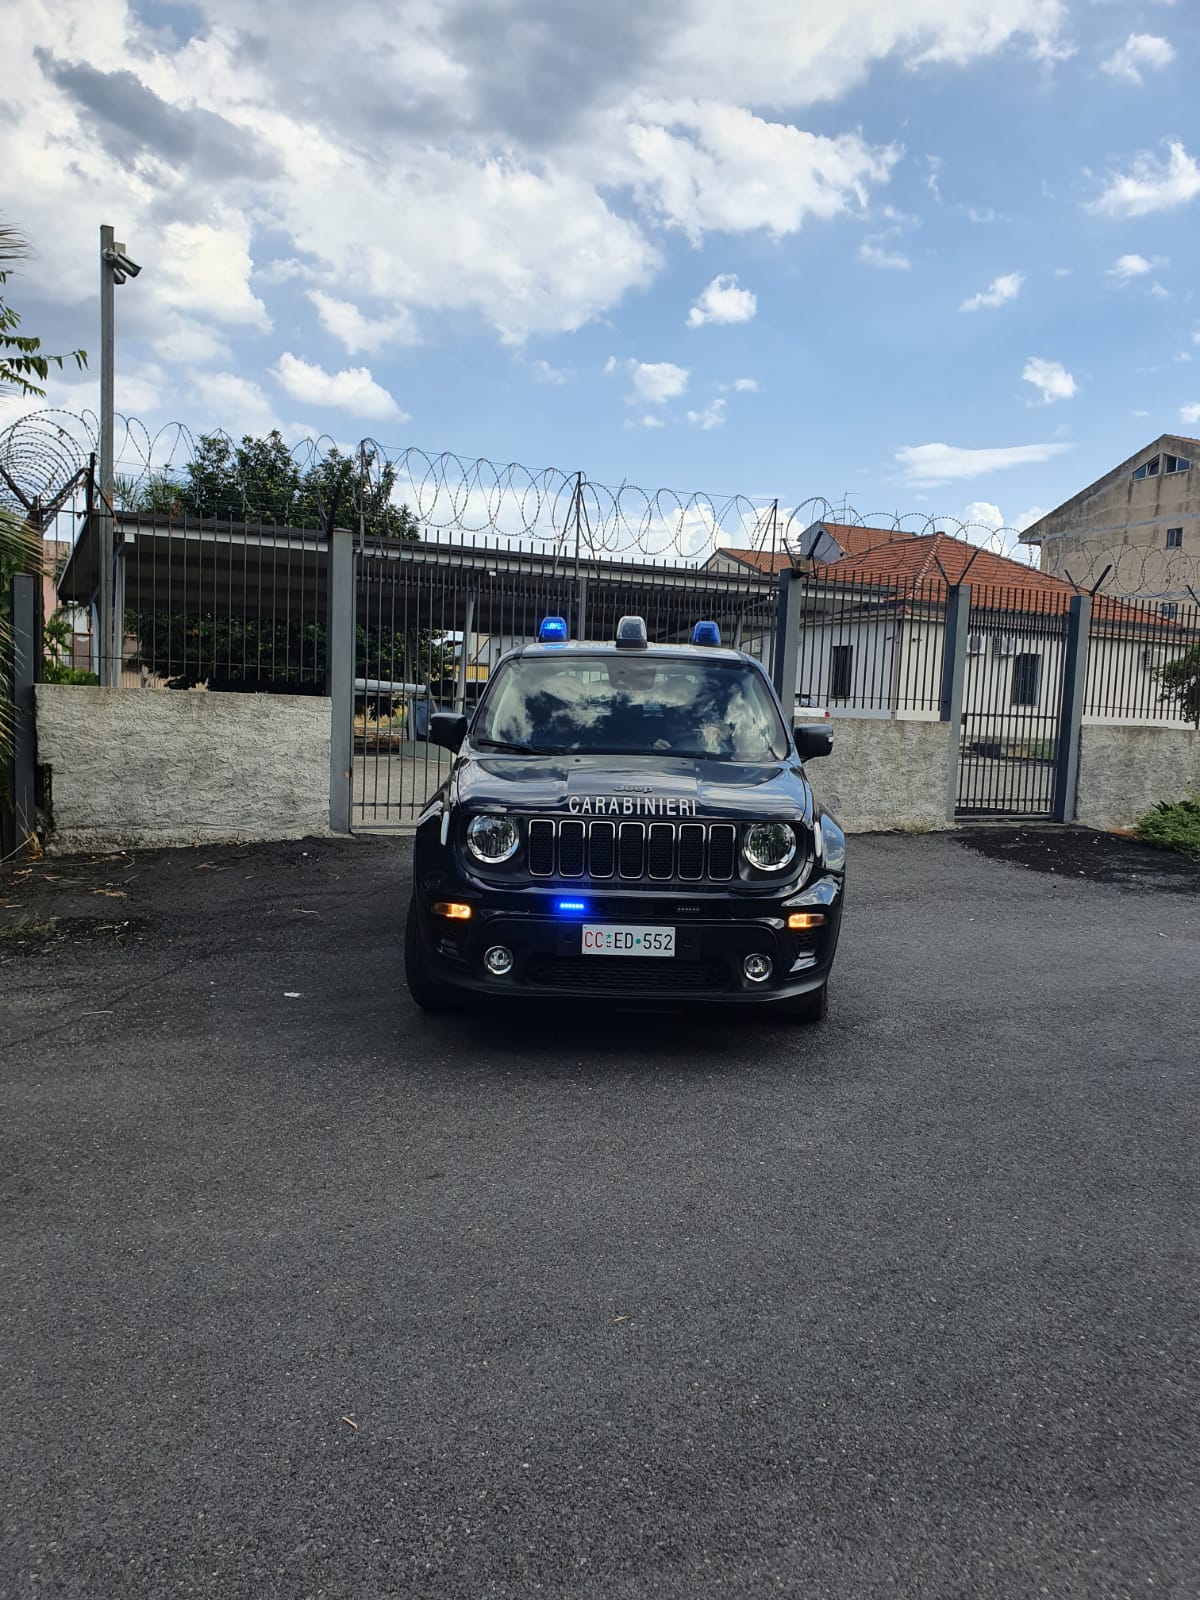 Fiumefreddo di Sicilia: rubano la centralina di una macchina, tre arresti